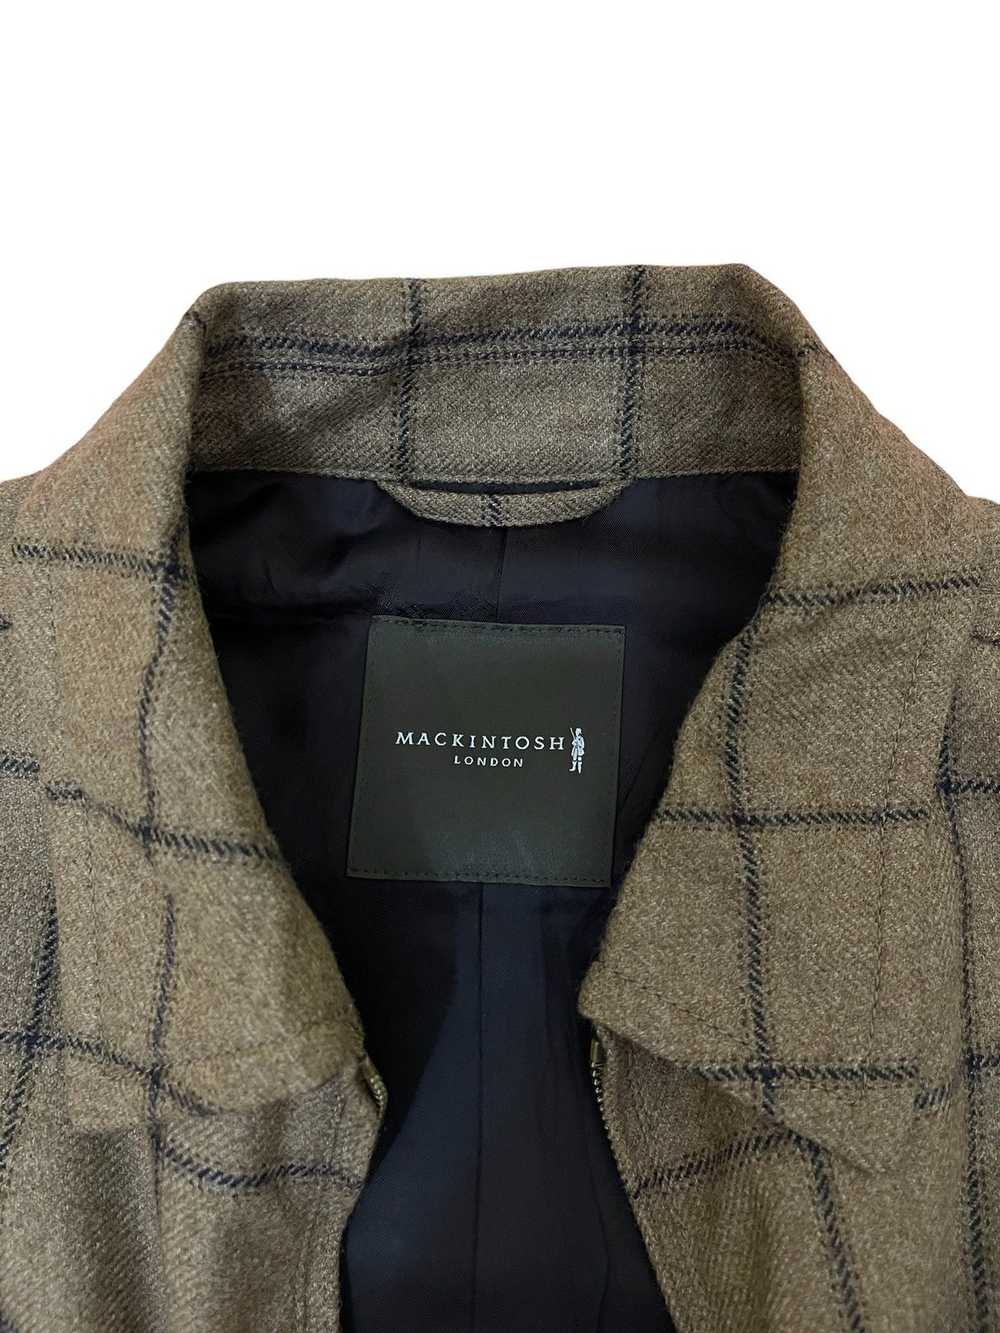 Mackintosh Mackintosh London jacket - image 7